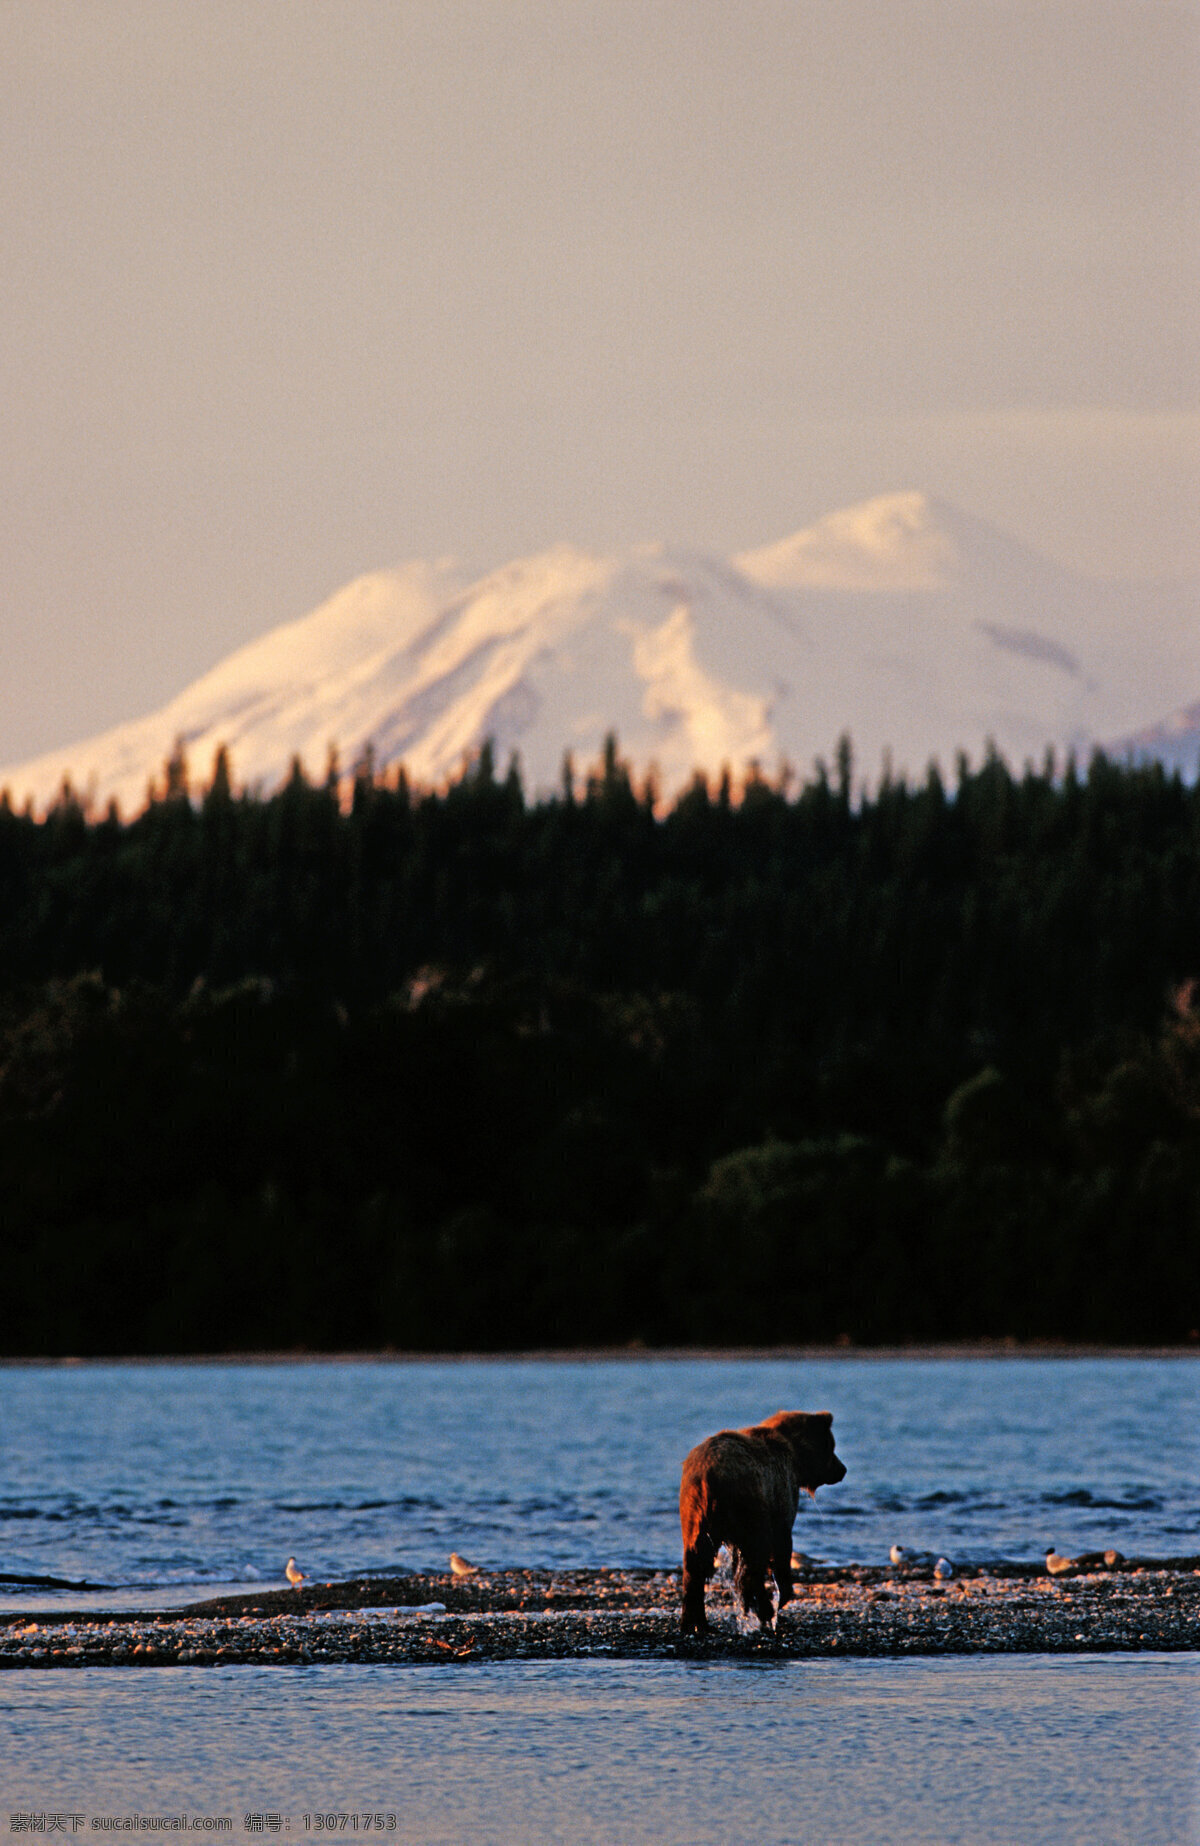 湖泊美景与熊 脯乳动物 保护动物 熊 狗熊 棕熊 野生动物 动物世界 摄影图 湖泊 美丽风景 陆地动物 生物世界 黑色